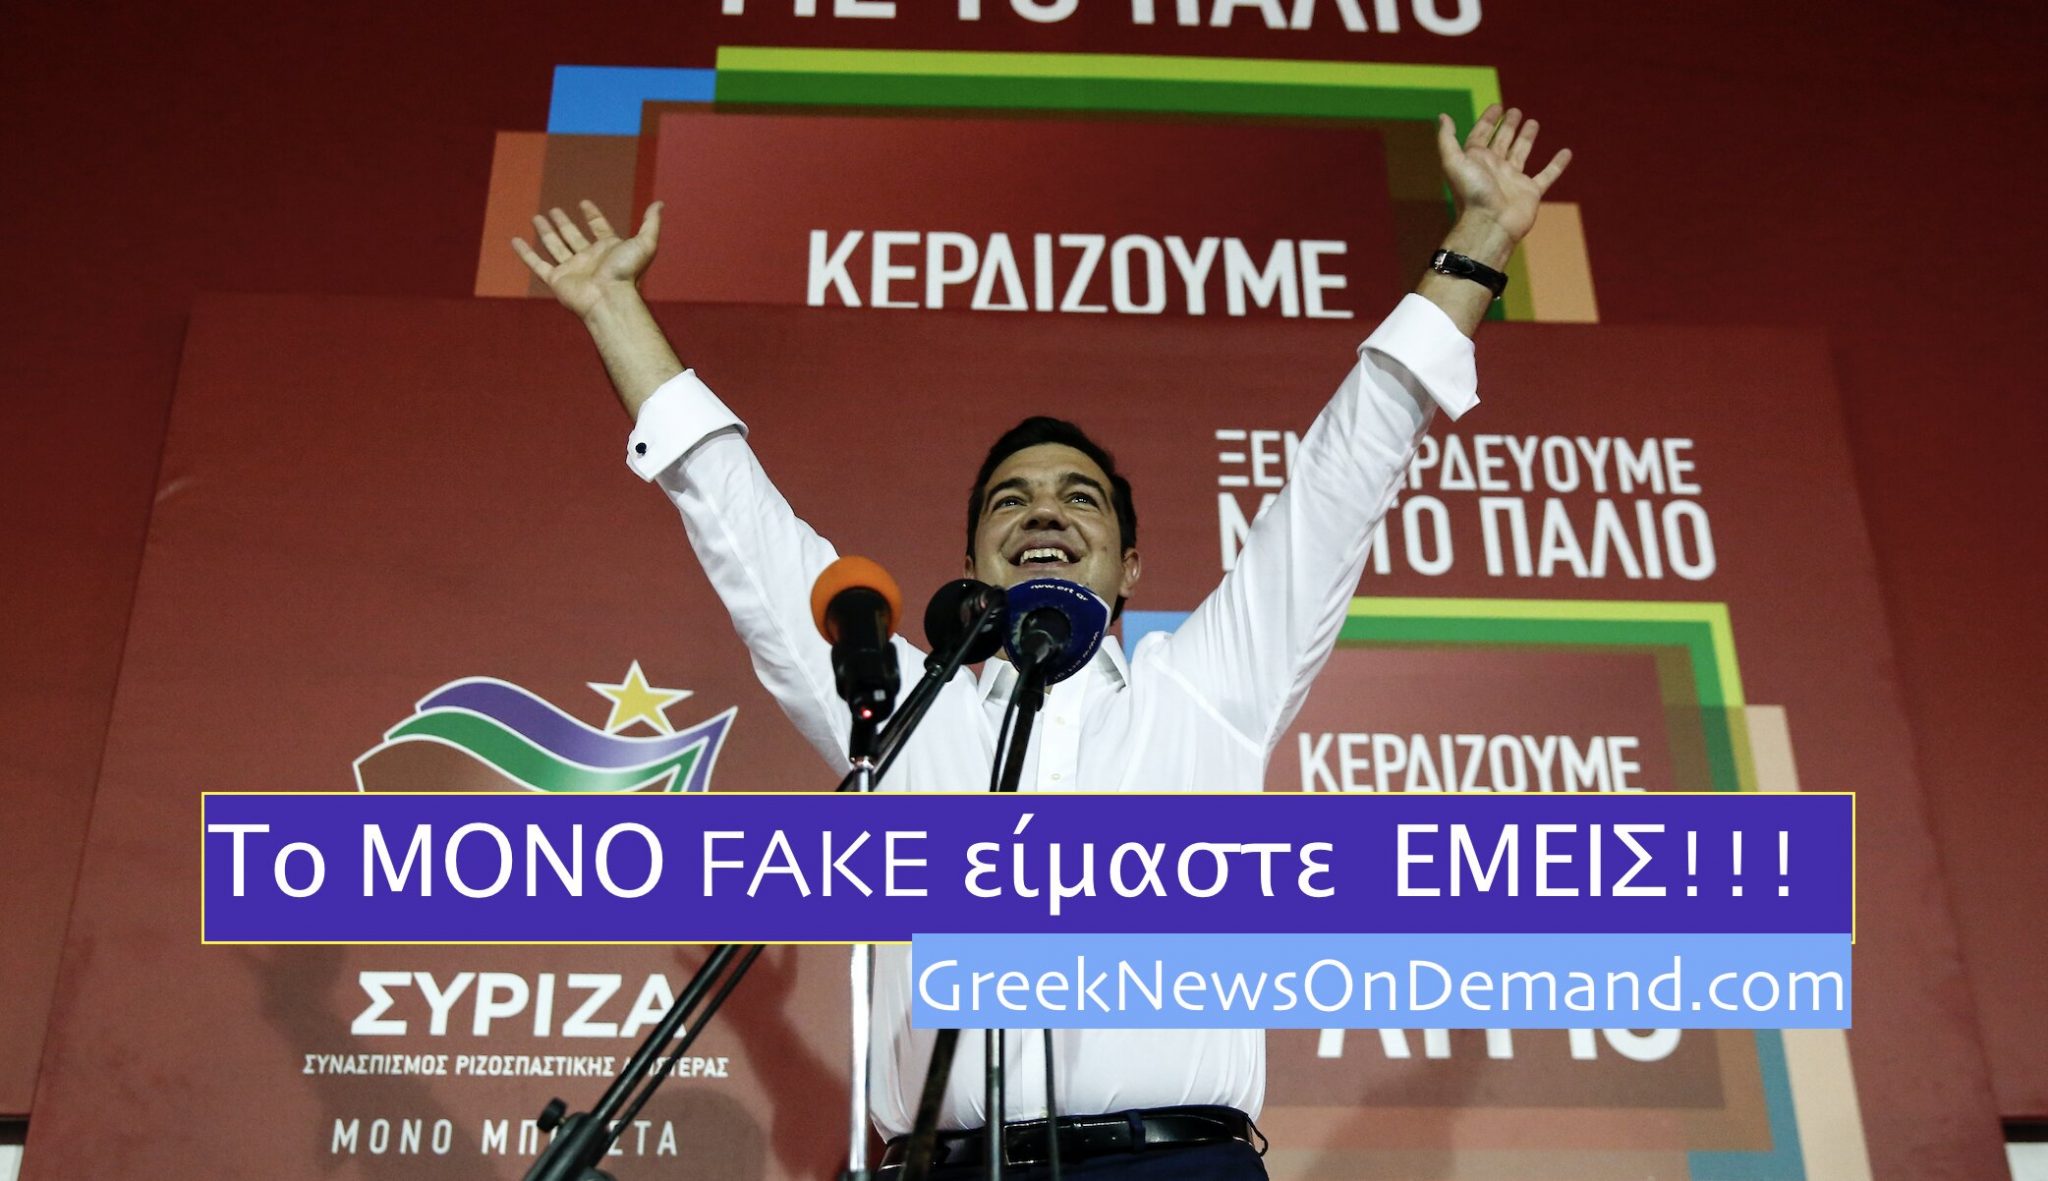 Η έξαρσις ΣΥΡΙΖΑ κατά των “fake news” βολεύει τους παιδεραστές της Ουάσινγκτον και όχι μόνο!